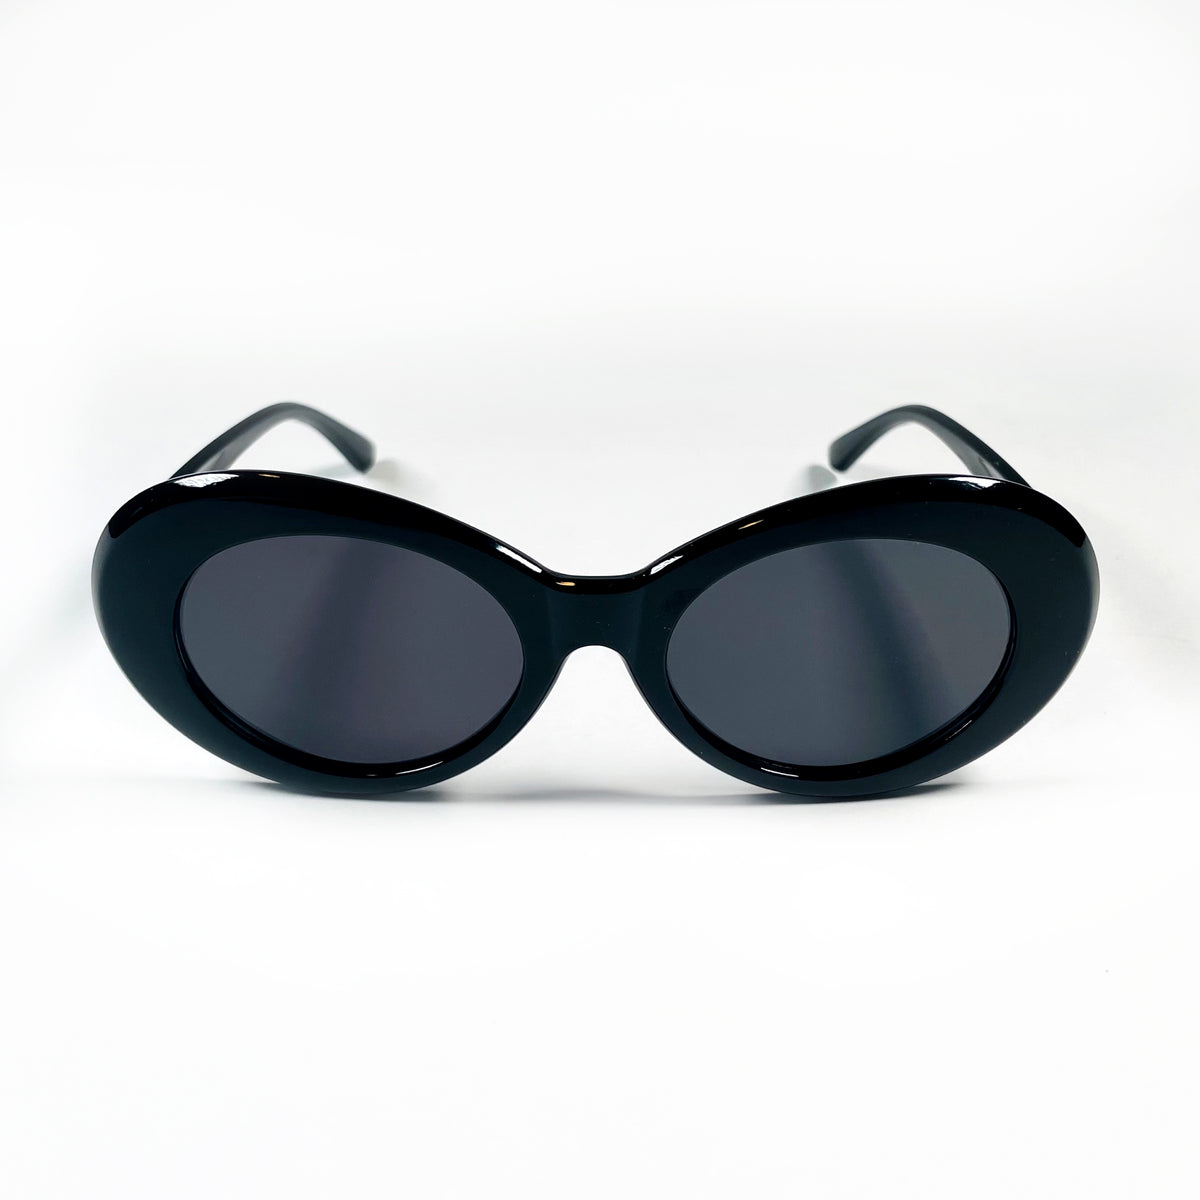 Black as Night Sunglasses